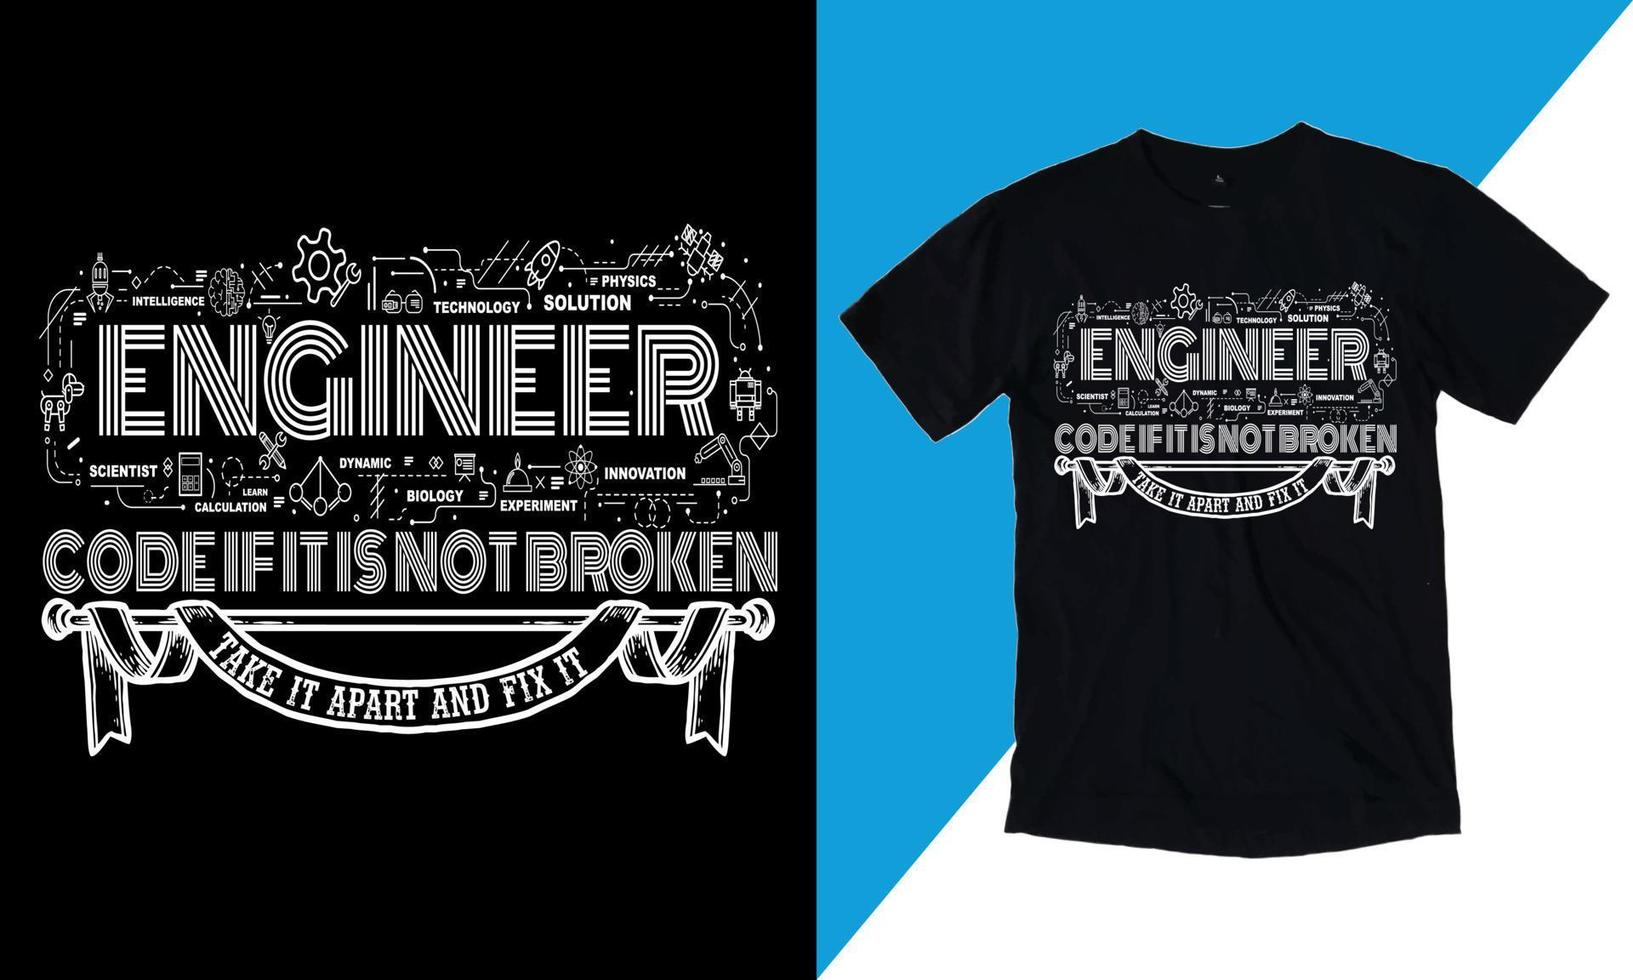 Jeder Tag ist ein Abenteuer, wenn Sie ein Ingenieur sind, ich habe keine Lebenszitate, ist bereit, auf T-Shirt-Vektor, Mechanikergeschenk, T-Shirt-Vektor zu drucken - Typografie, Vintage, vektor